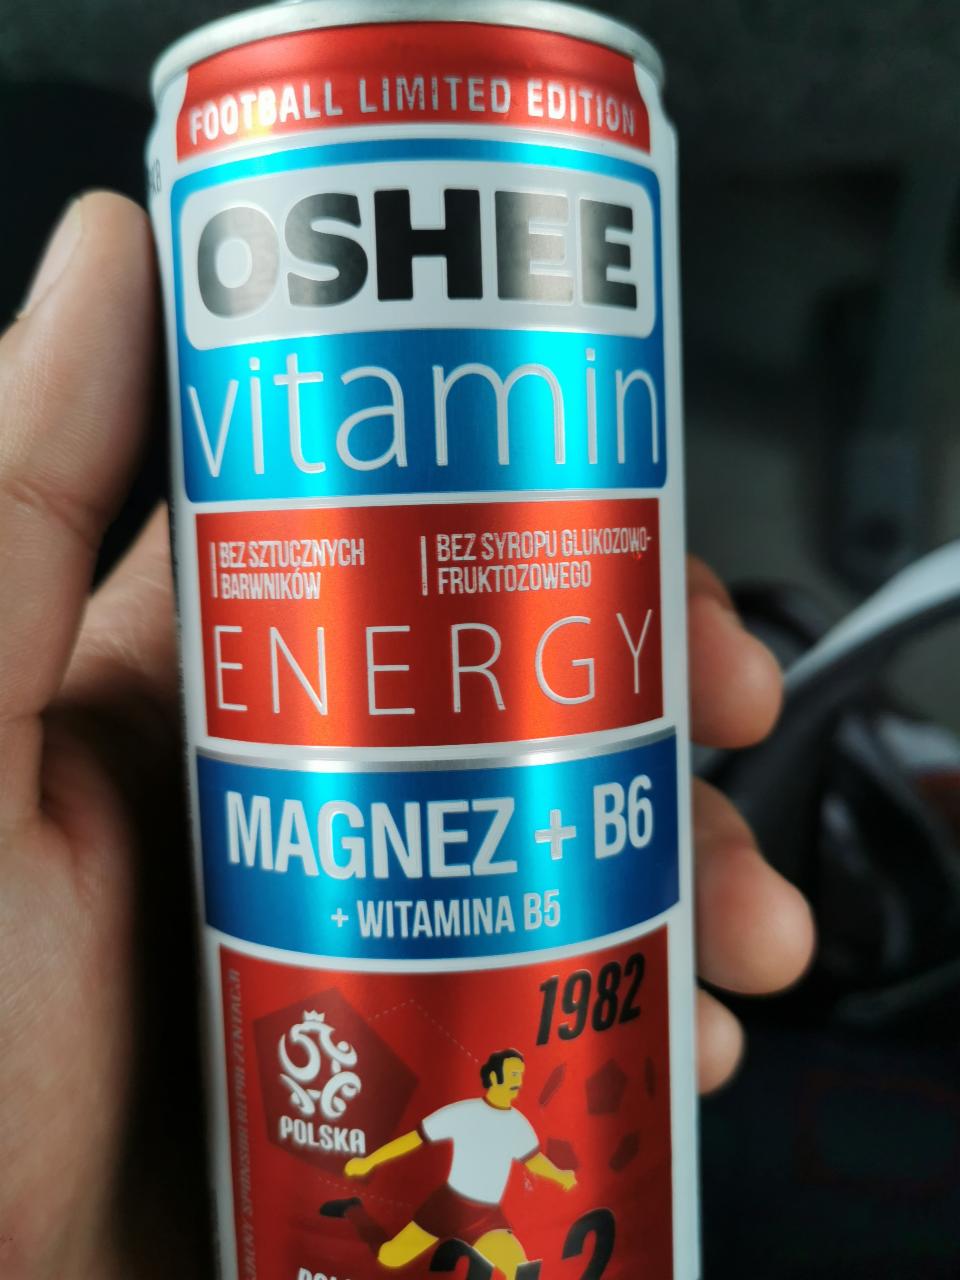 Fotografie - Oshee vitamin energy